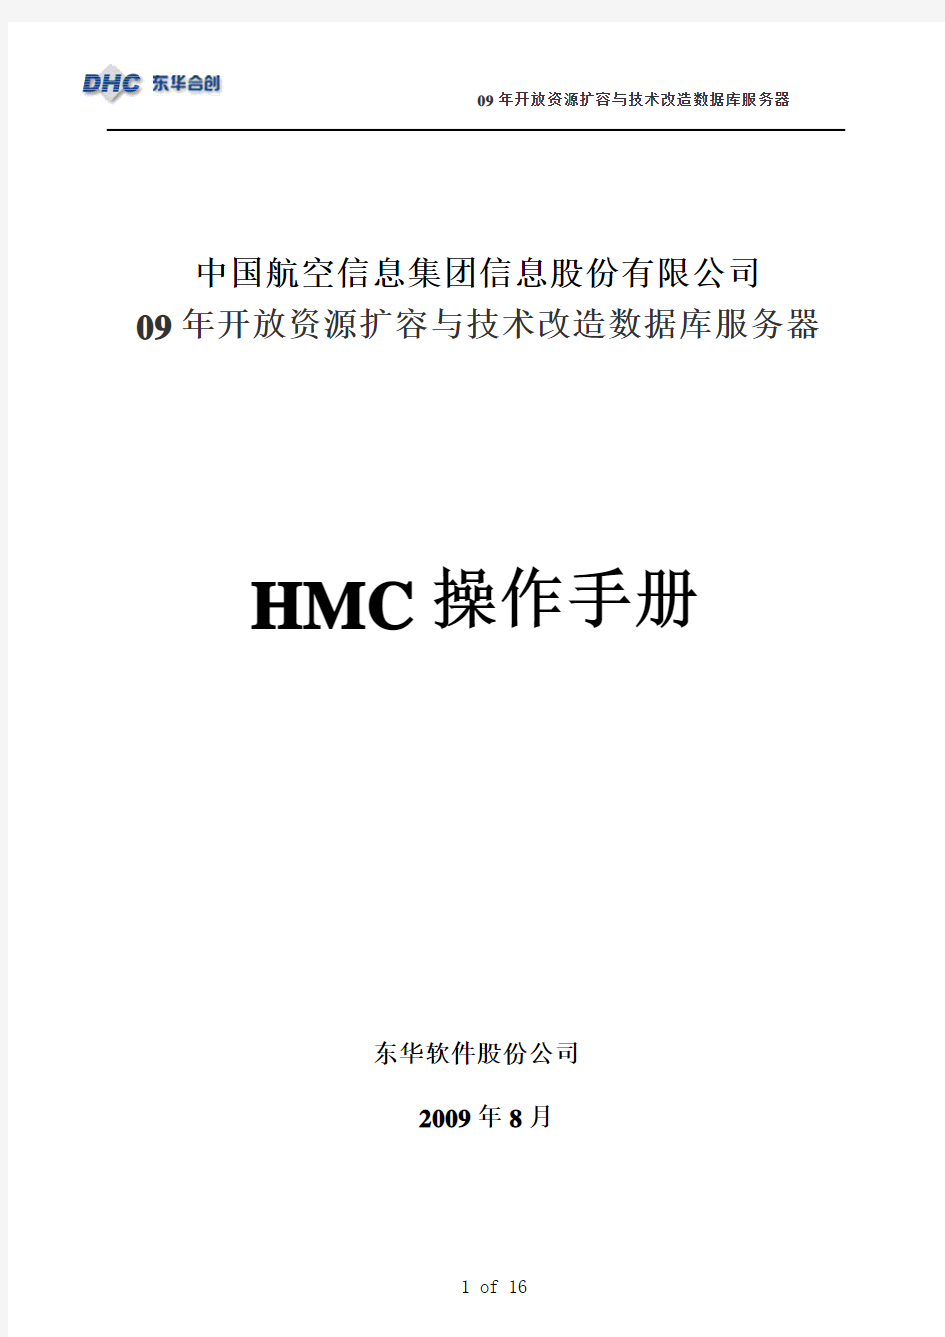 HMC_V7.0操作手册-ver1.0